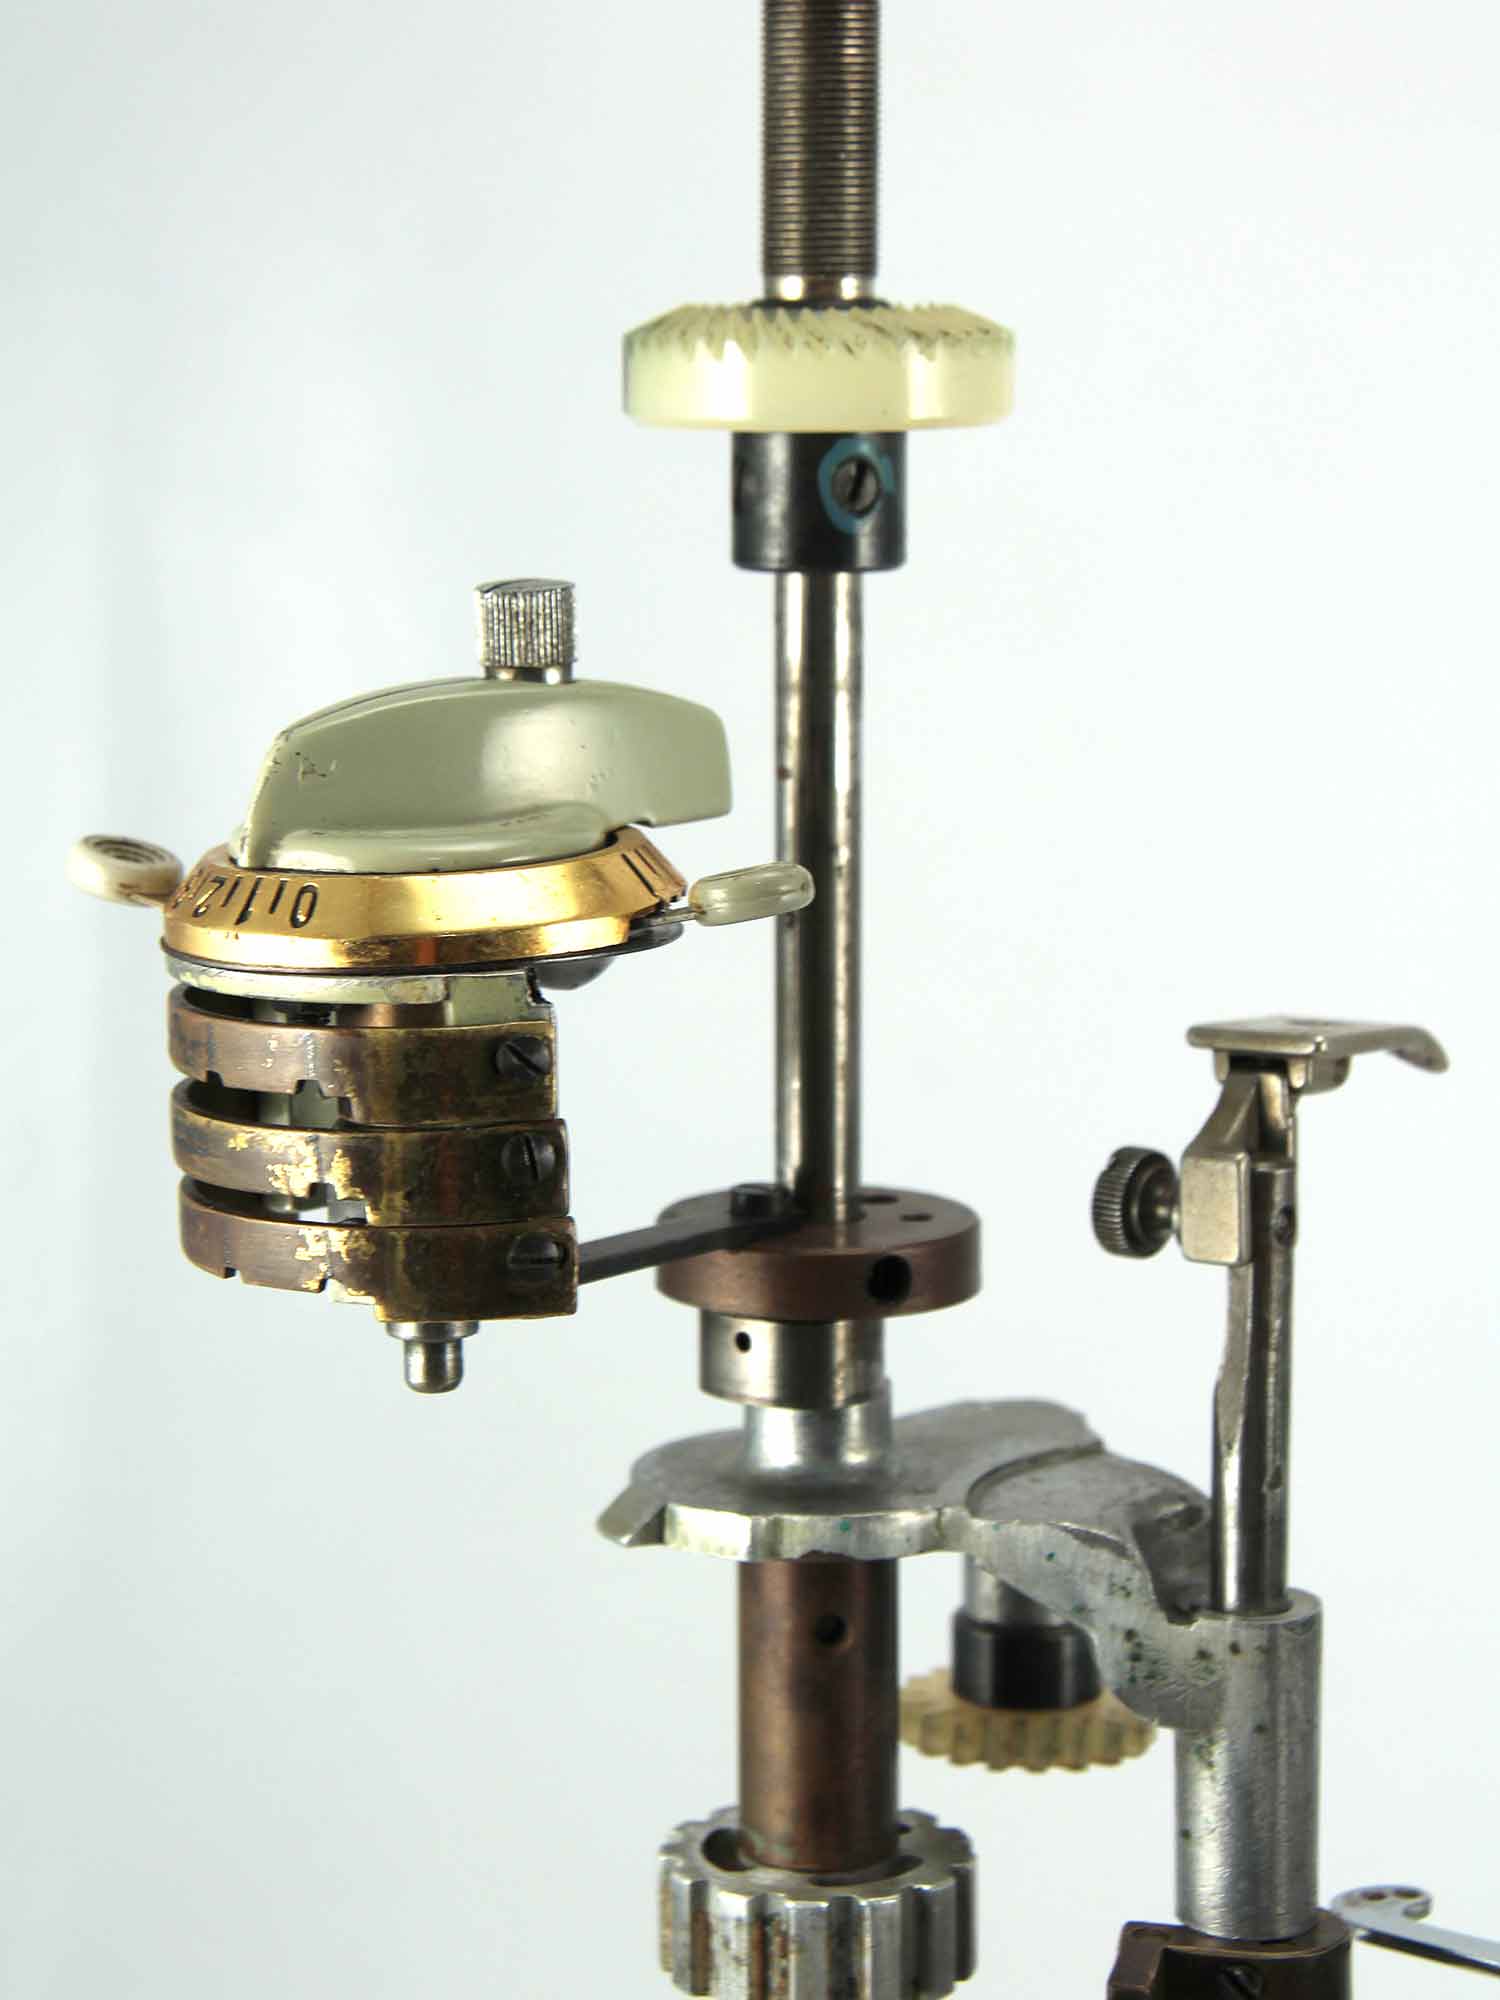 Sculpture of a Sigma 31017 sewing machine interpretation